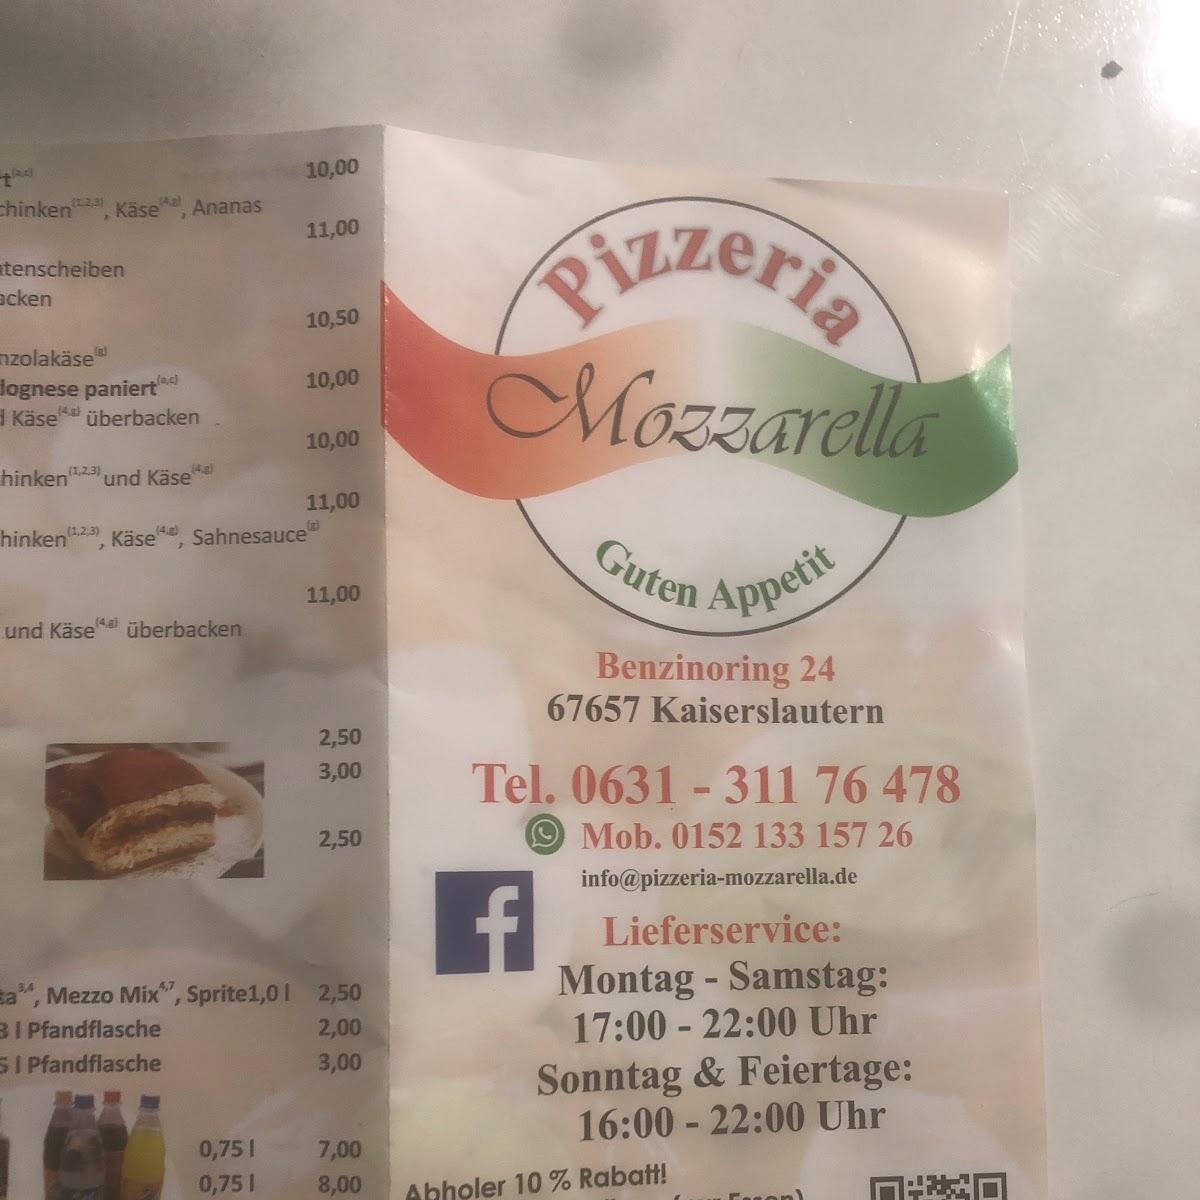 Restaurant "Pizzeria Mozzarella" in Kaiserslautern